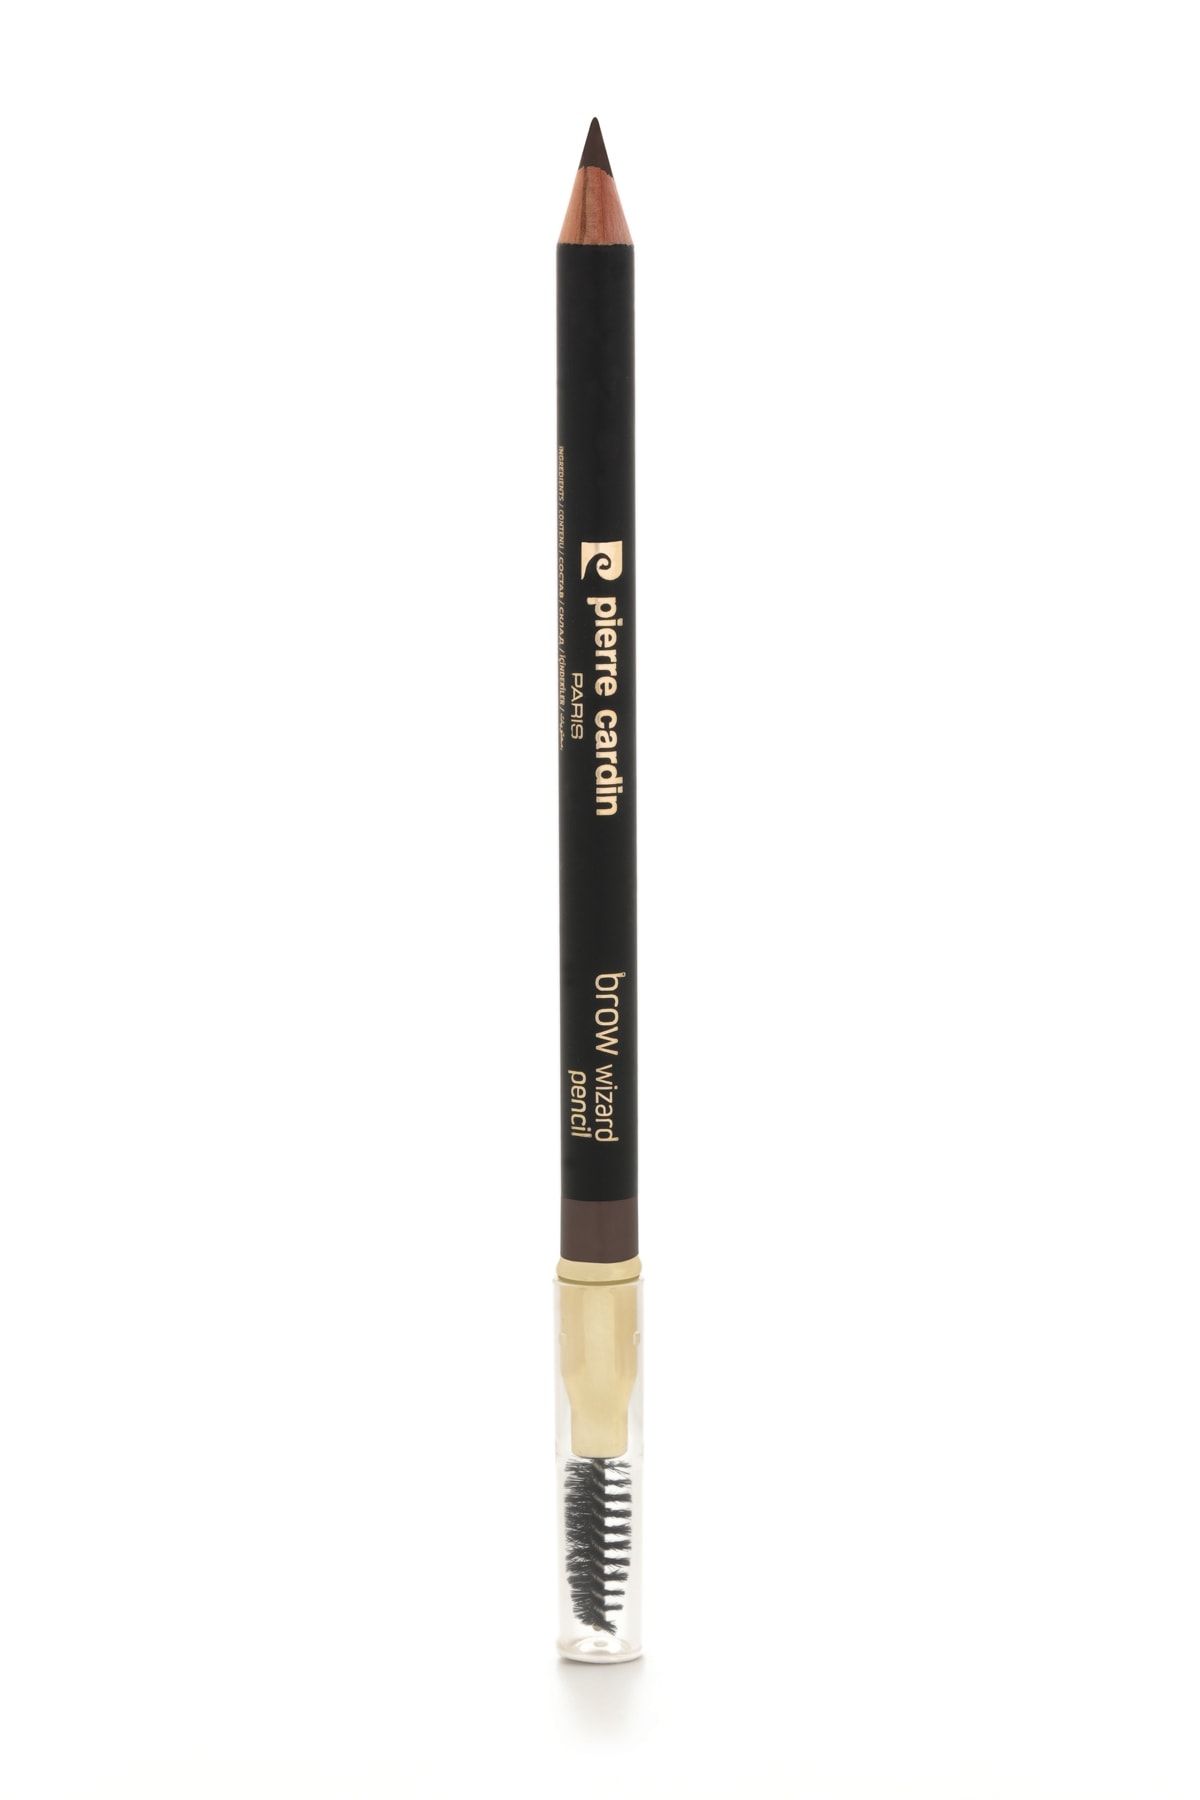 Pierre Cardin Brow Wizard Pencil Kaş Kalemi - Cool Light Blonde 619